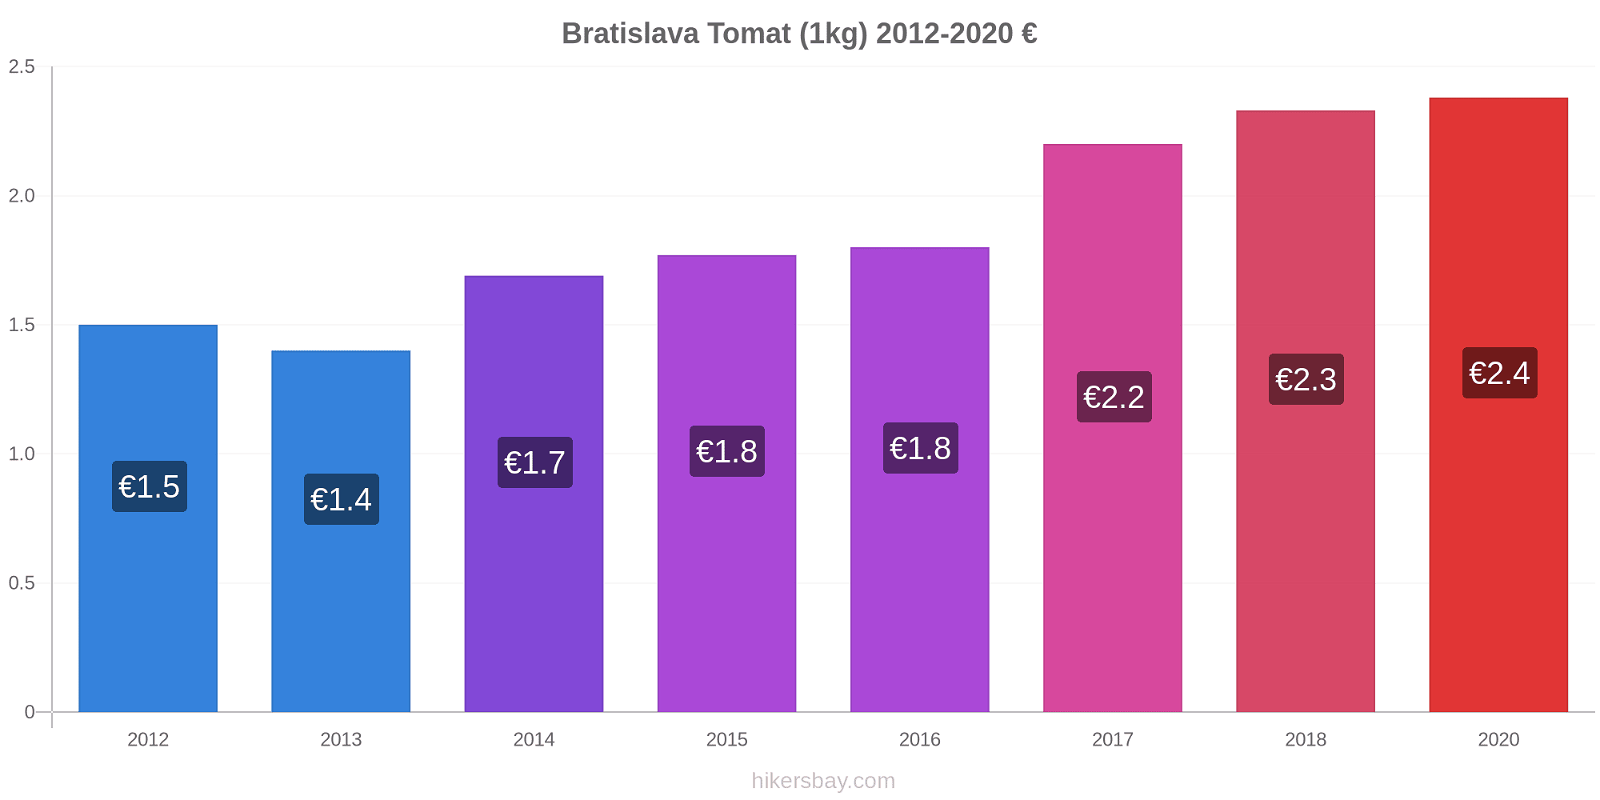 Bratislava perubahan harga Tomat (1kg) hikersbay.com